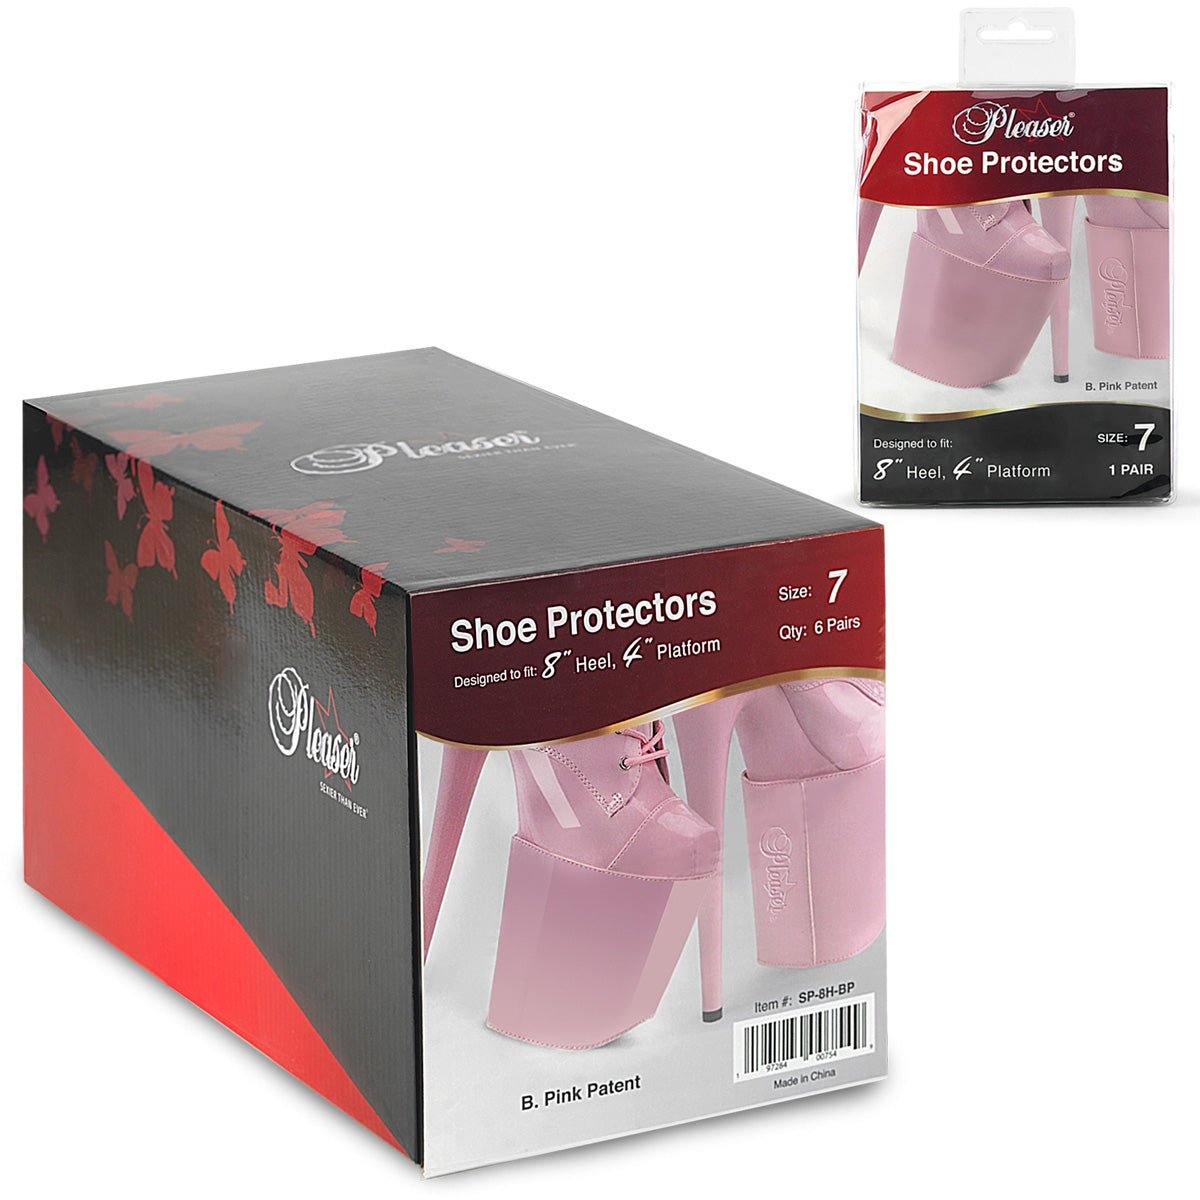 SP-8H-BP - Baby Pink Patent Shoe Protectors (8") - 1 Pair